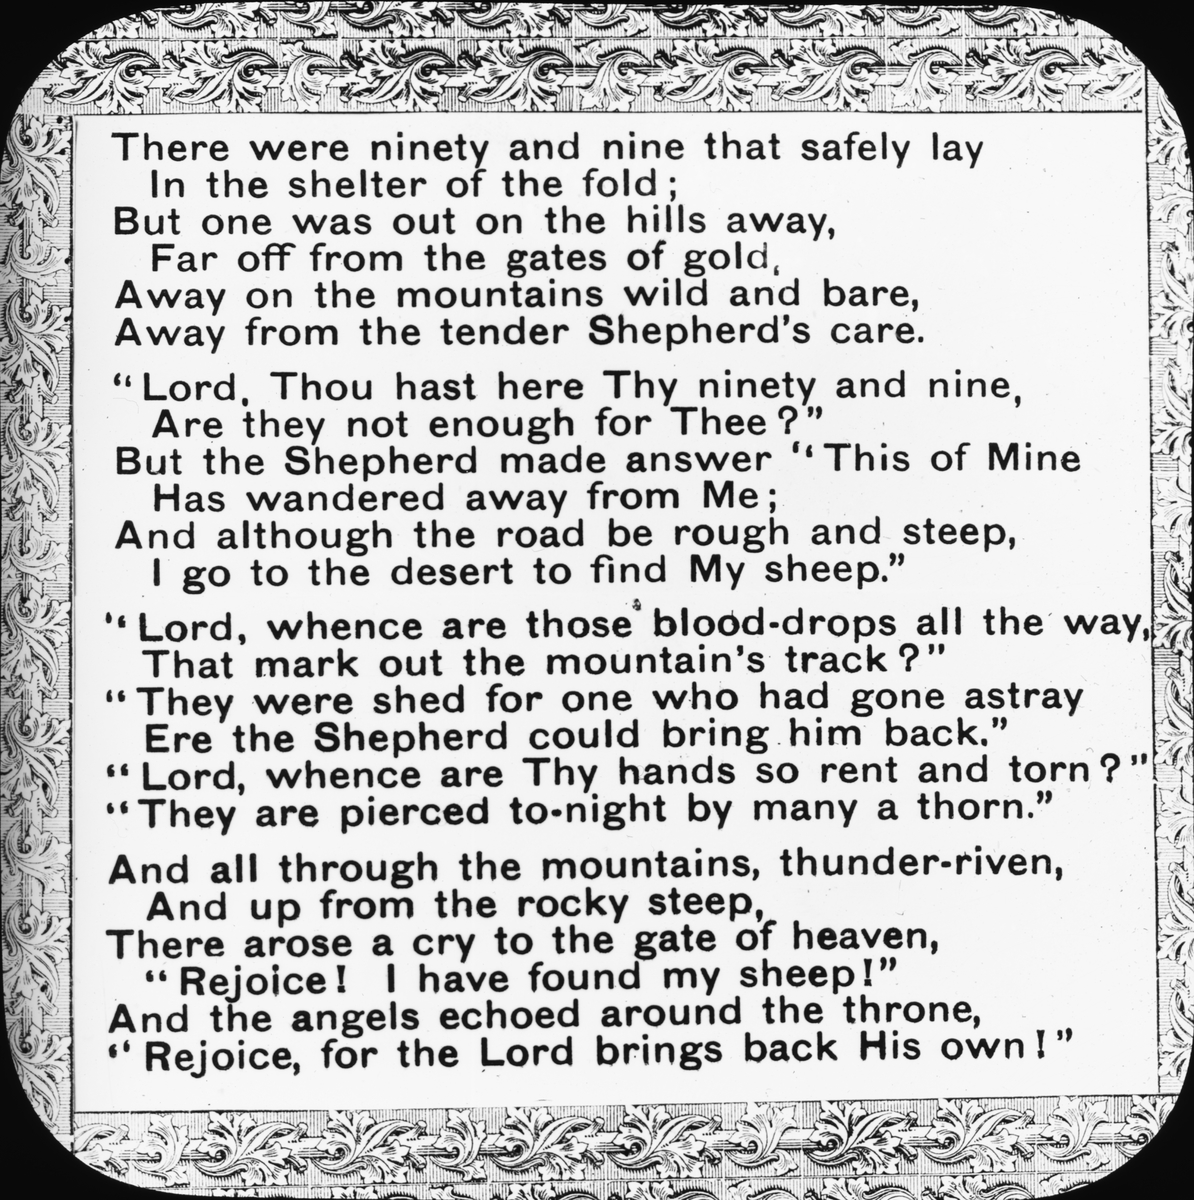 Skioptikonbild. Psalmen "De nittionio" (The Ninety and Nine) av Elizabeth C. Clephane (1868), som refererar till den gode herden (the Good Shepherd).



